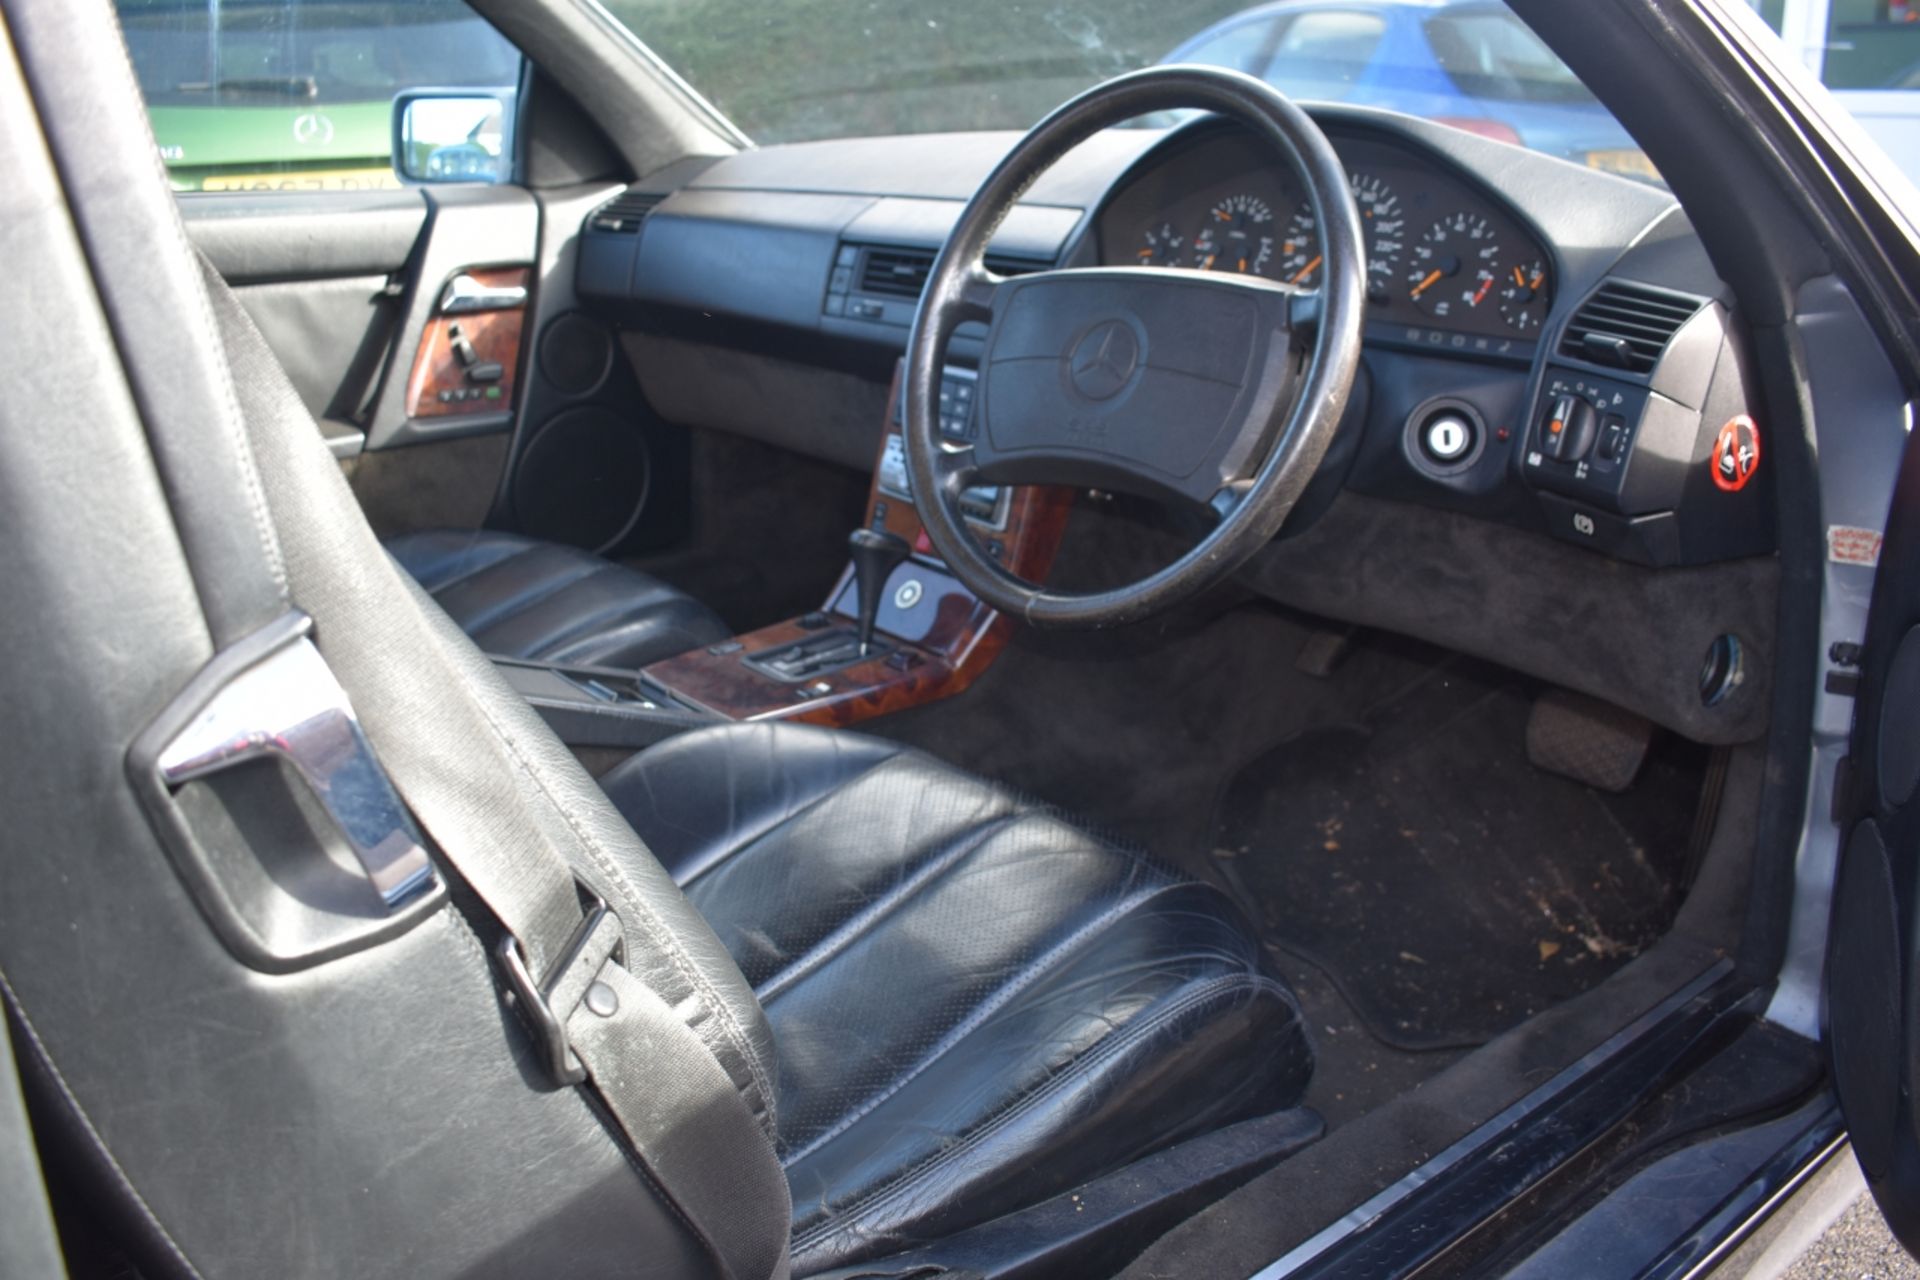 A 1991 Mercedes-Benz 300 SL-24 Registration number H681 HKJ Grey and black leather V5C MOT expires - Image 2 of 15